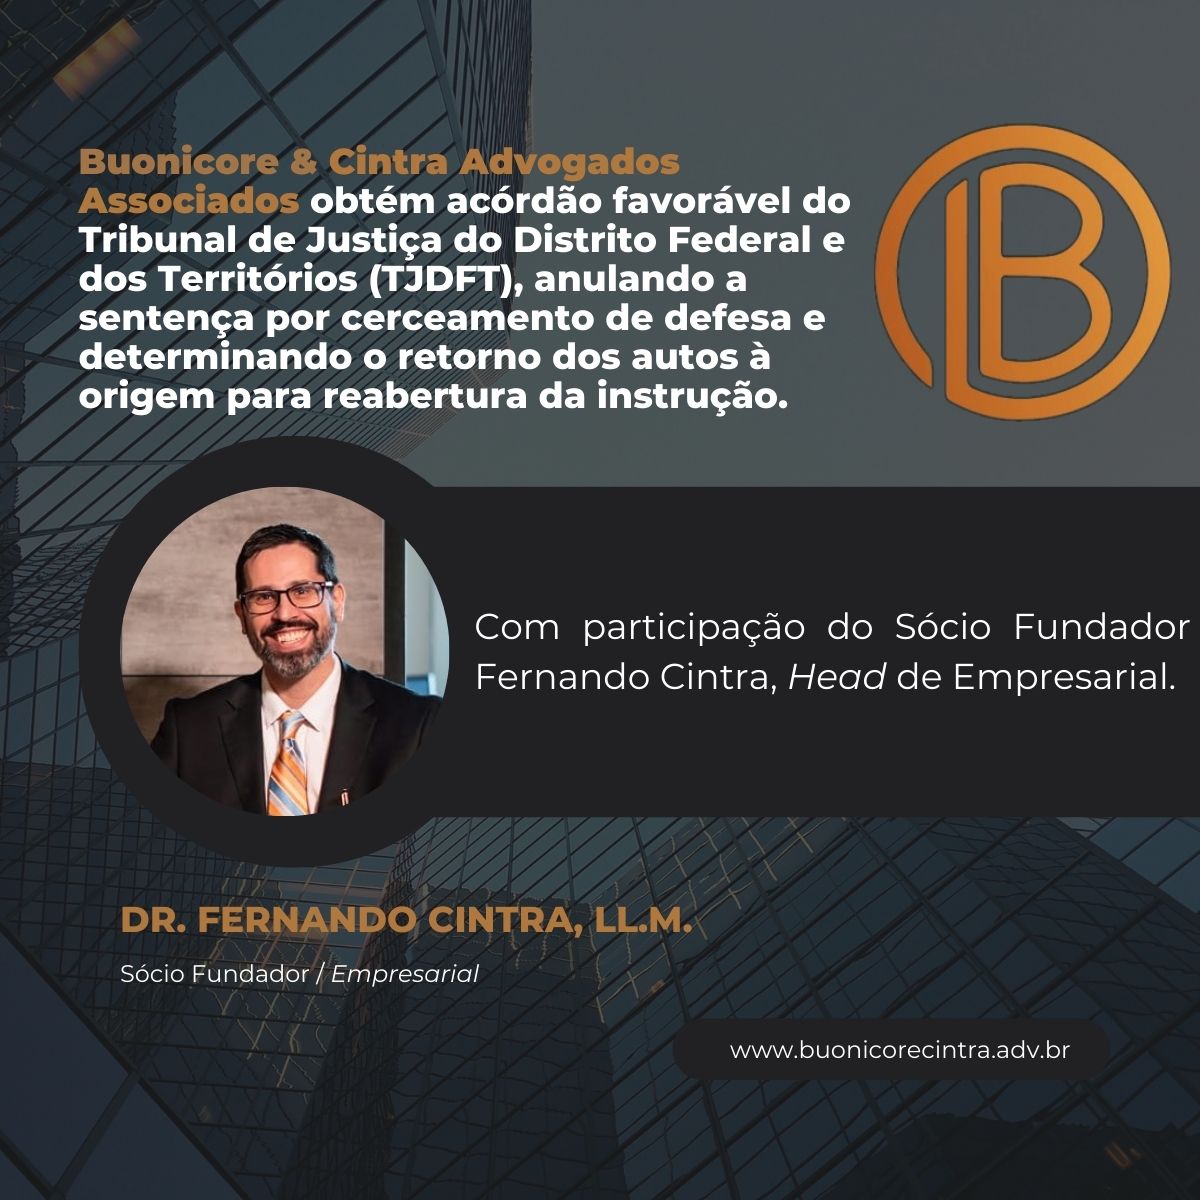 Buonicore & Cintra Advogados Associados (@BuonicoreCintra) / Twitter